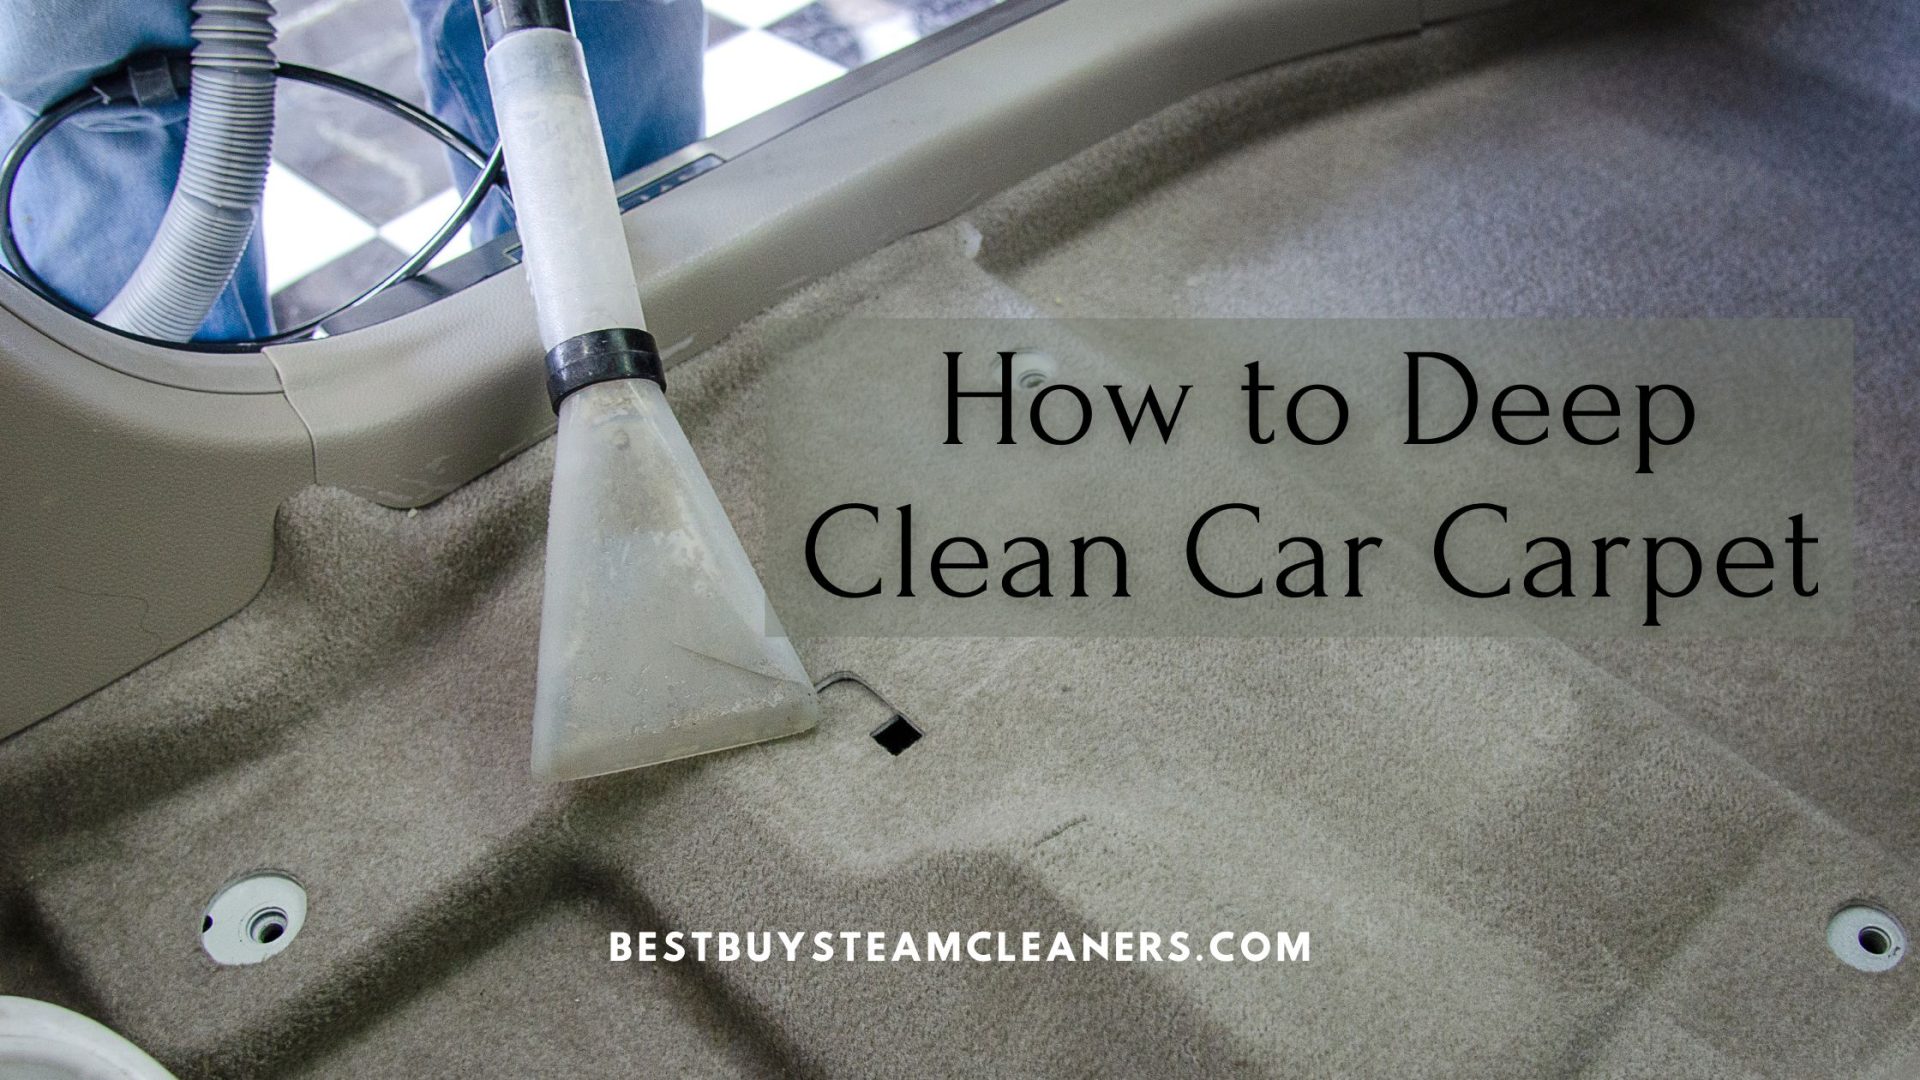 How to Deep Clean Car Carpet